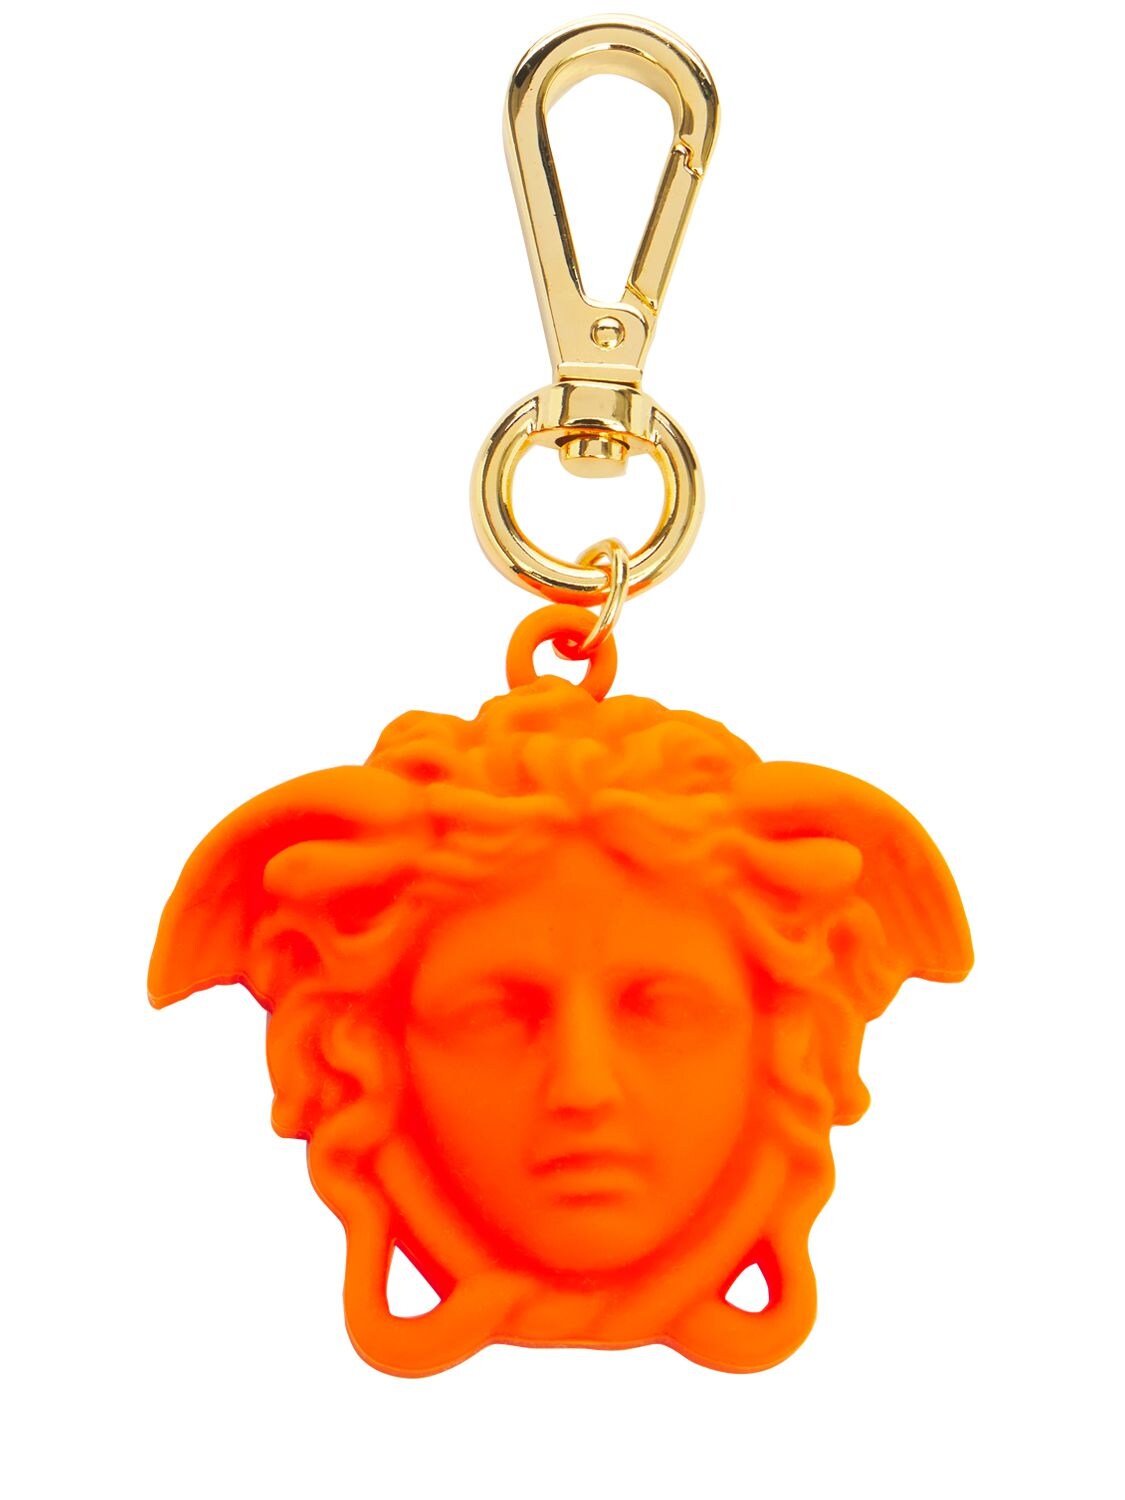 Versace 美杜莎吊坠钥匙链 In Orange,gold